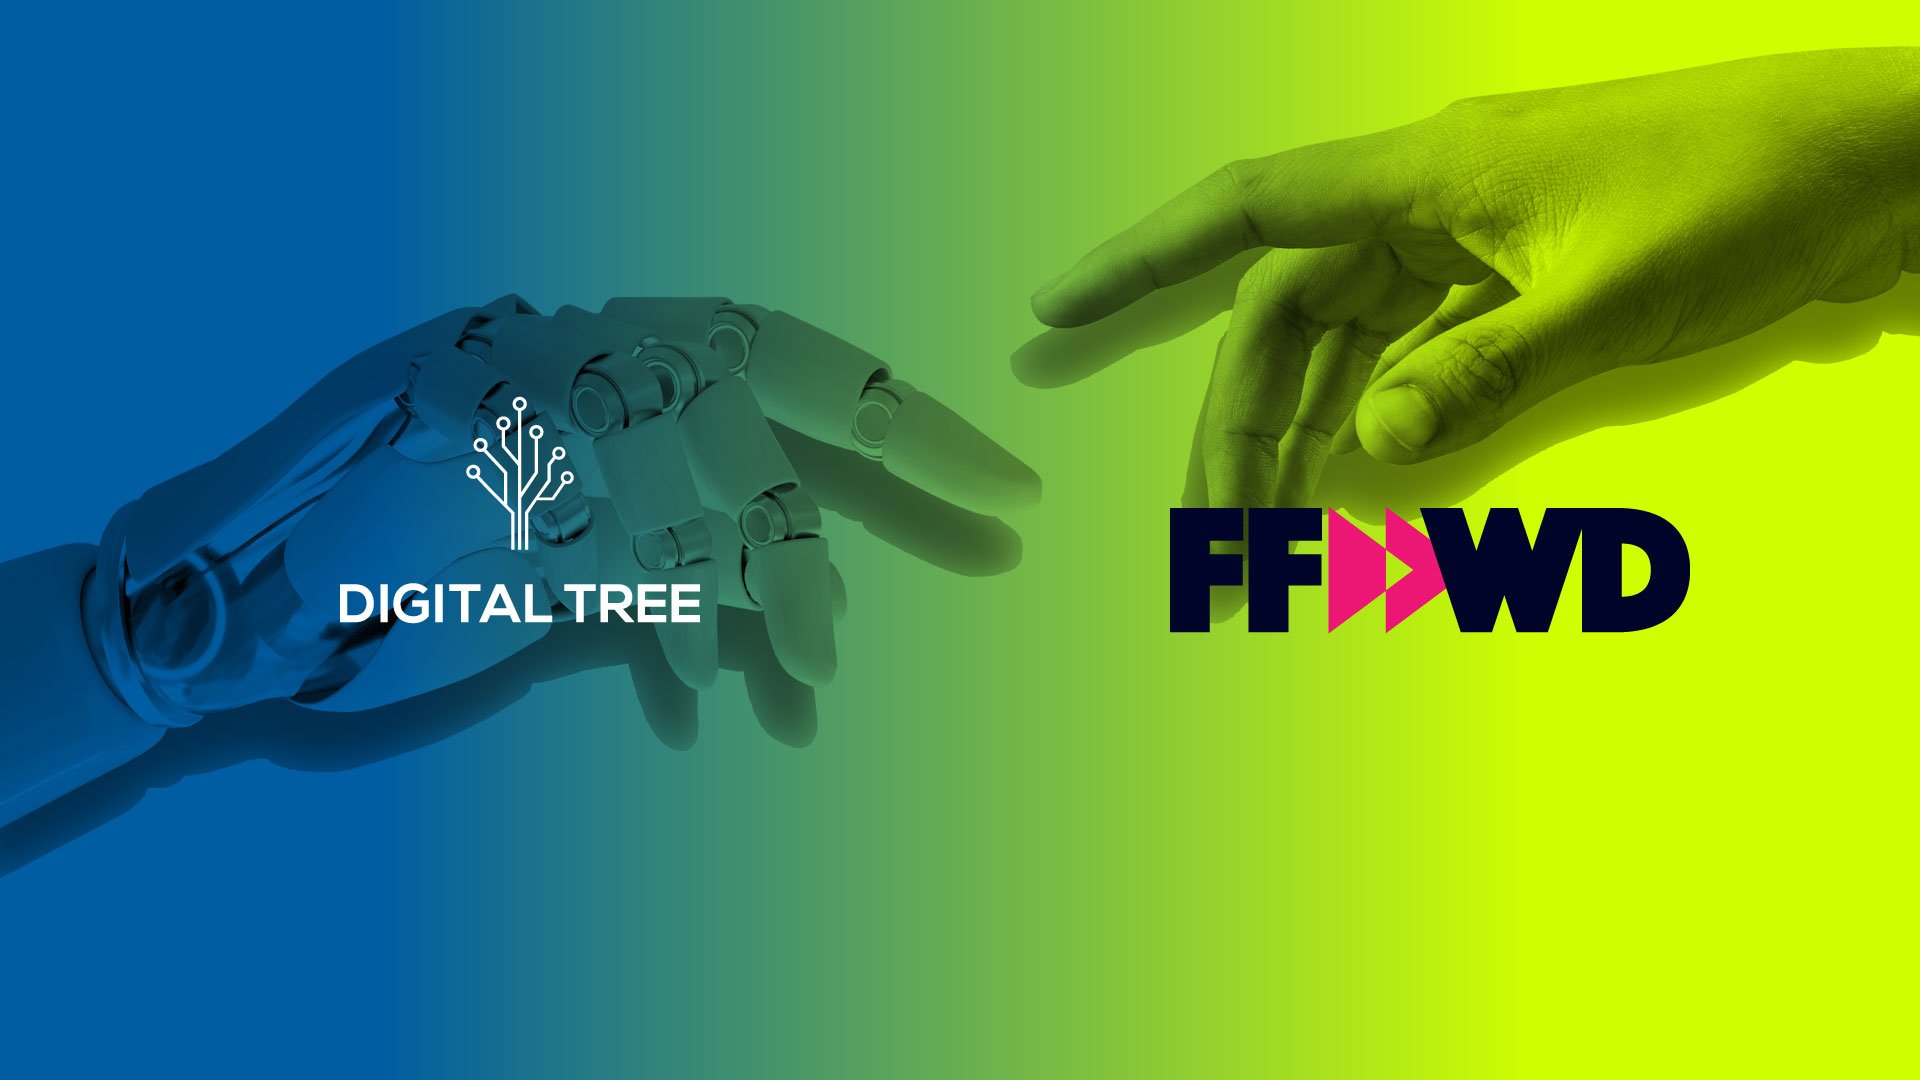 Digital Tree - FFWD